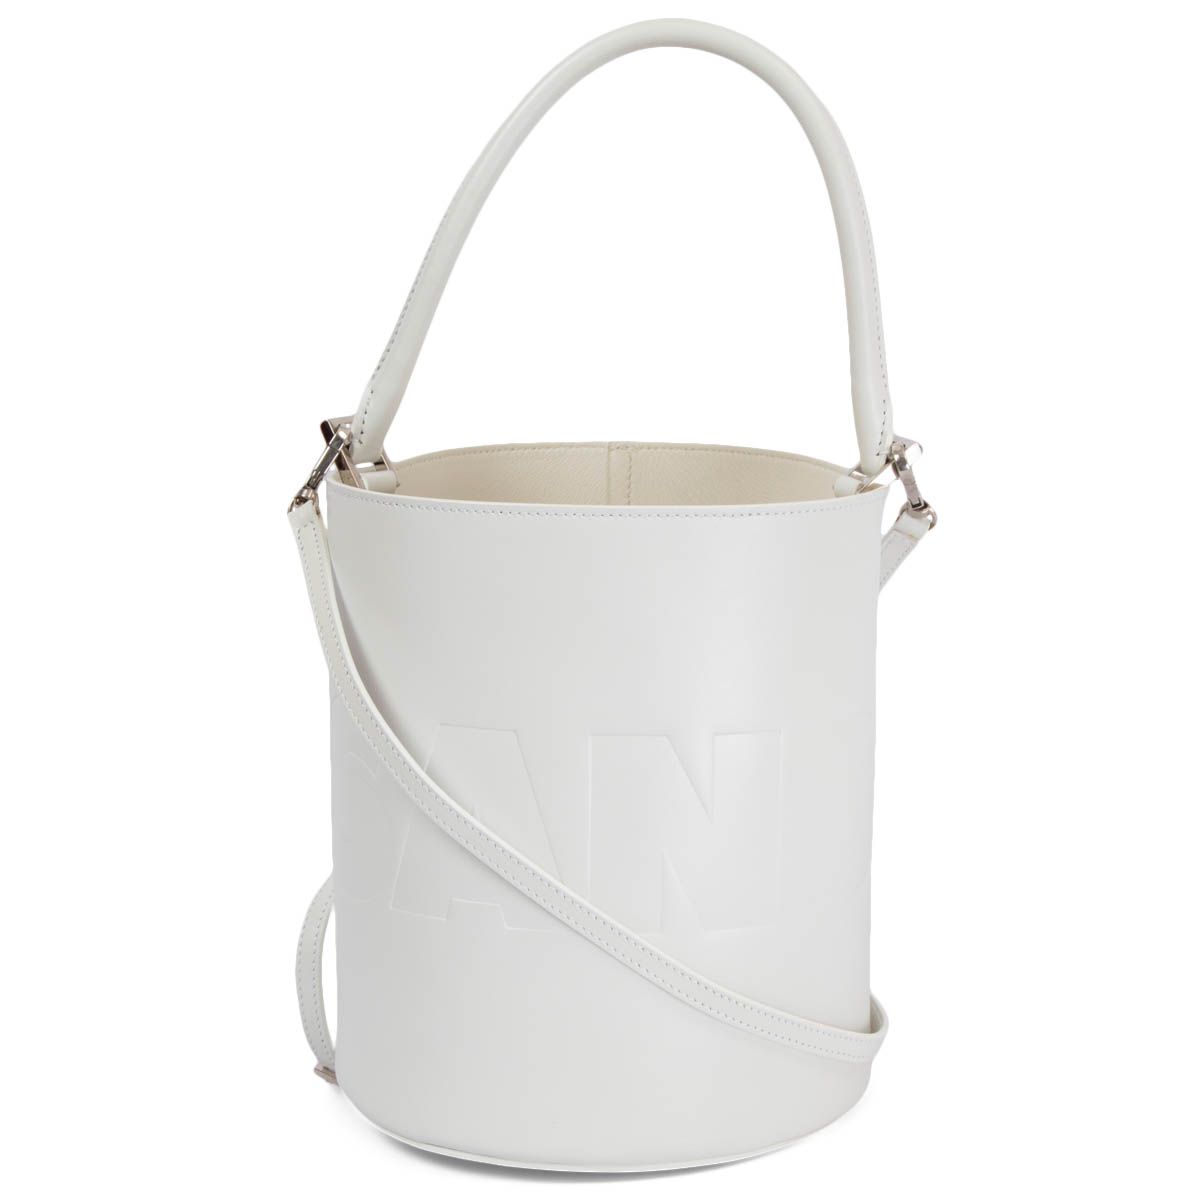 Jil Sander Round Bucket Bag White Leather - Zürich